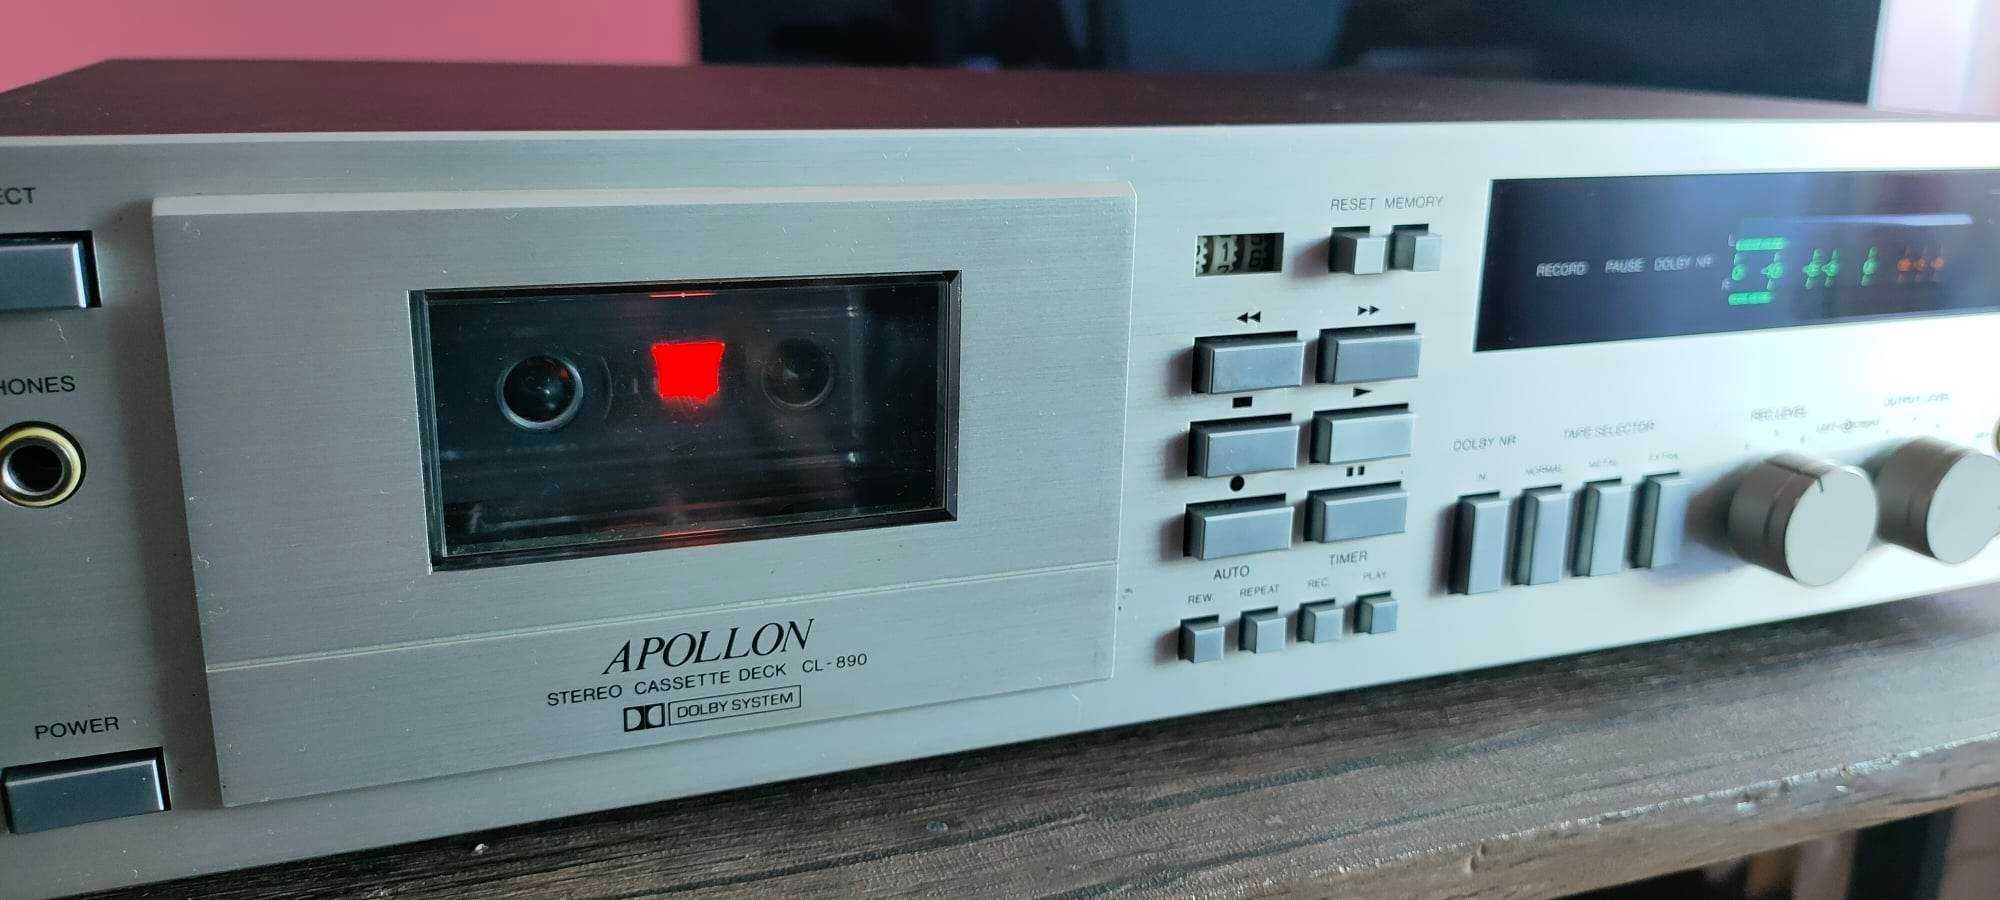 Apollon CL-890 Stereo Cassette Deck